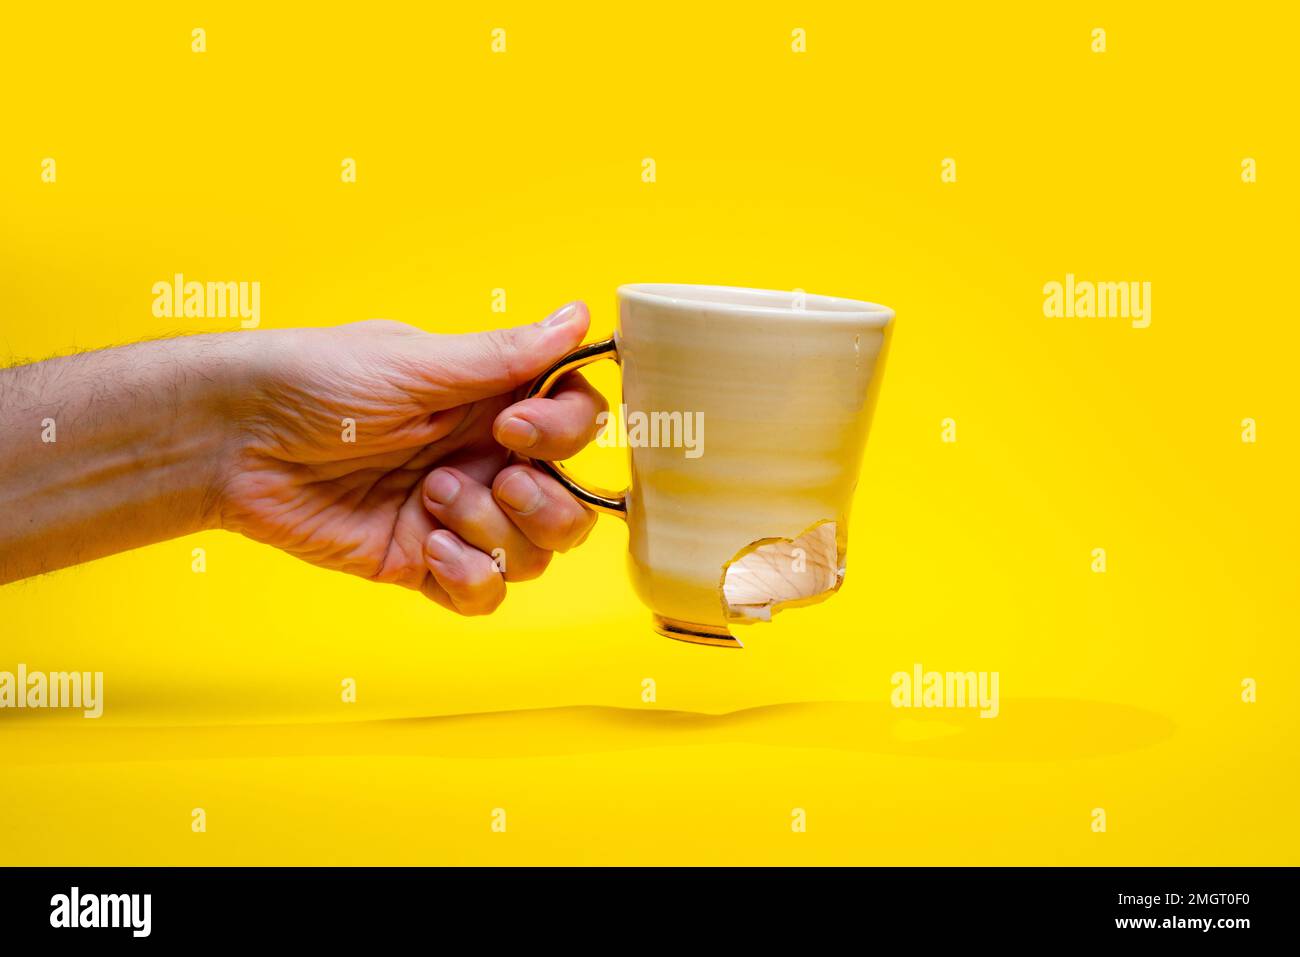 Uomo che tiene rotto tè tazza isolato su sfondo giallo. Primo piano del braccio che tiene la tazza di caffè incrinata Foto Stock